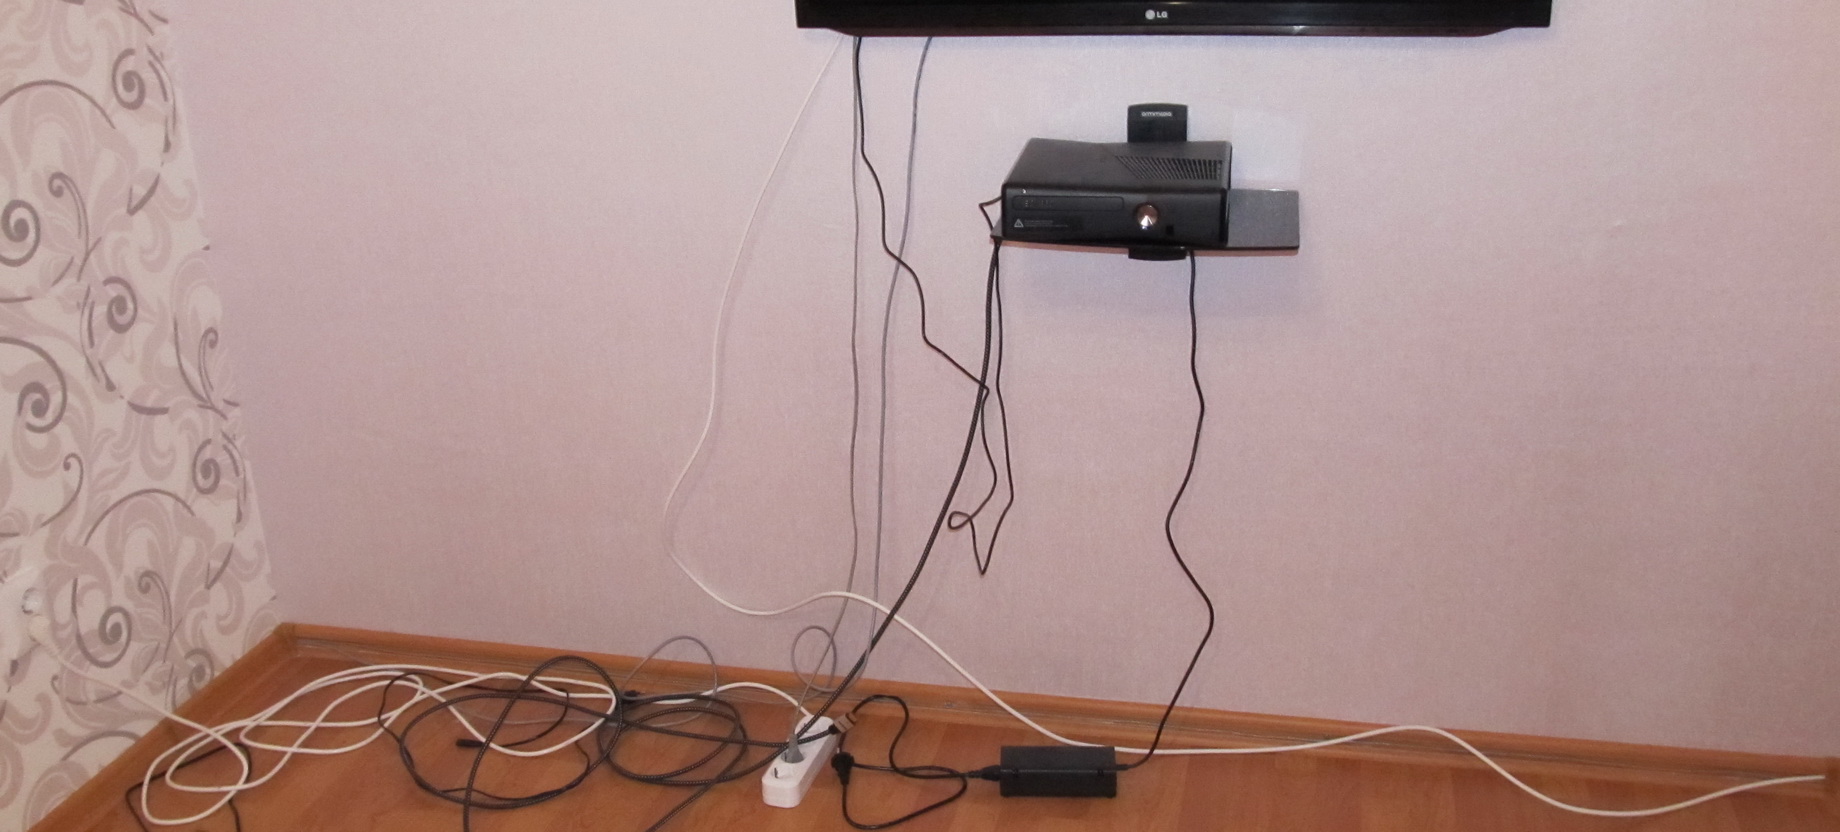 Провода от телевизора на стене